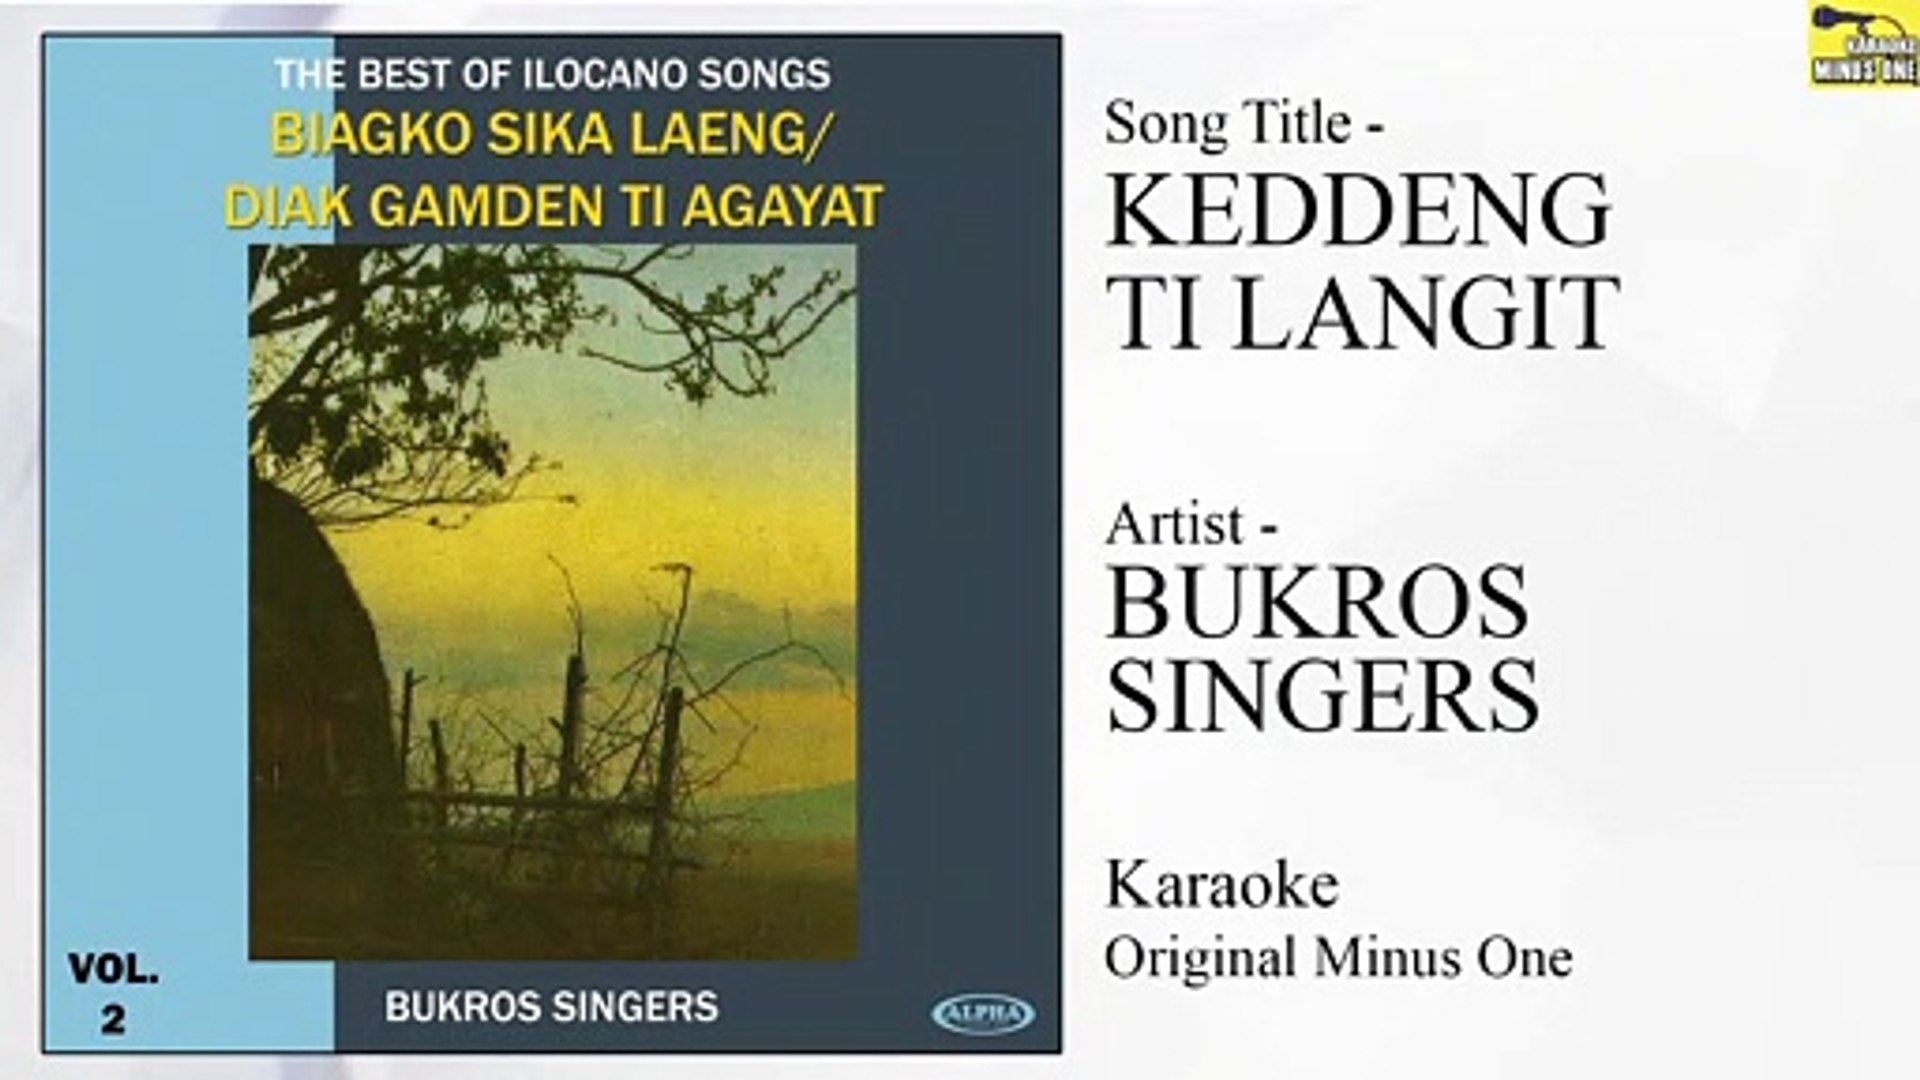 Bukros Singers - Keddeng Ti Langit (Original Minus One)